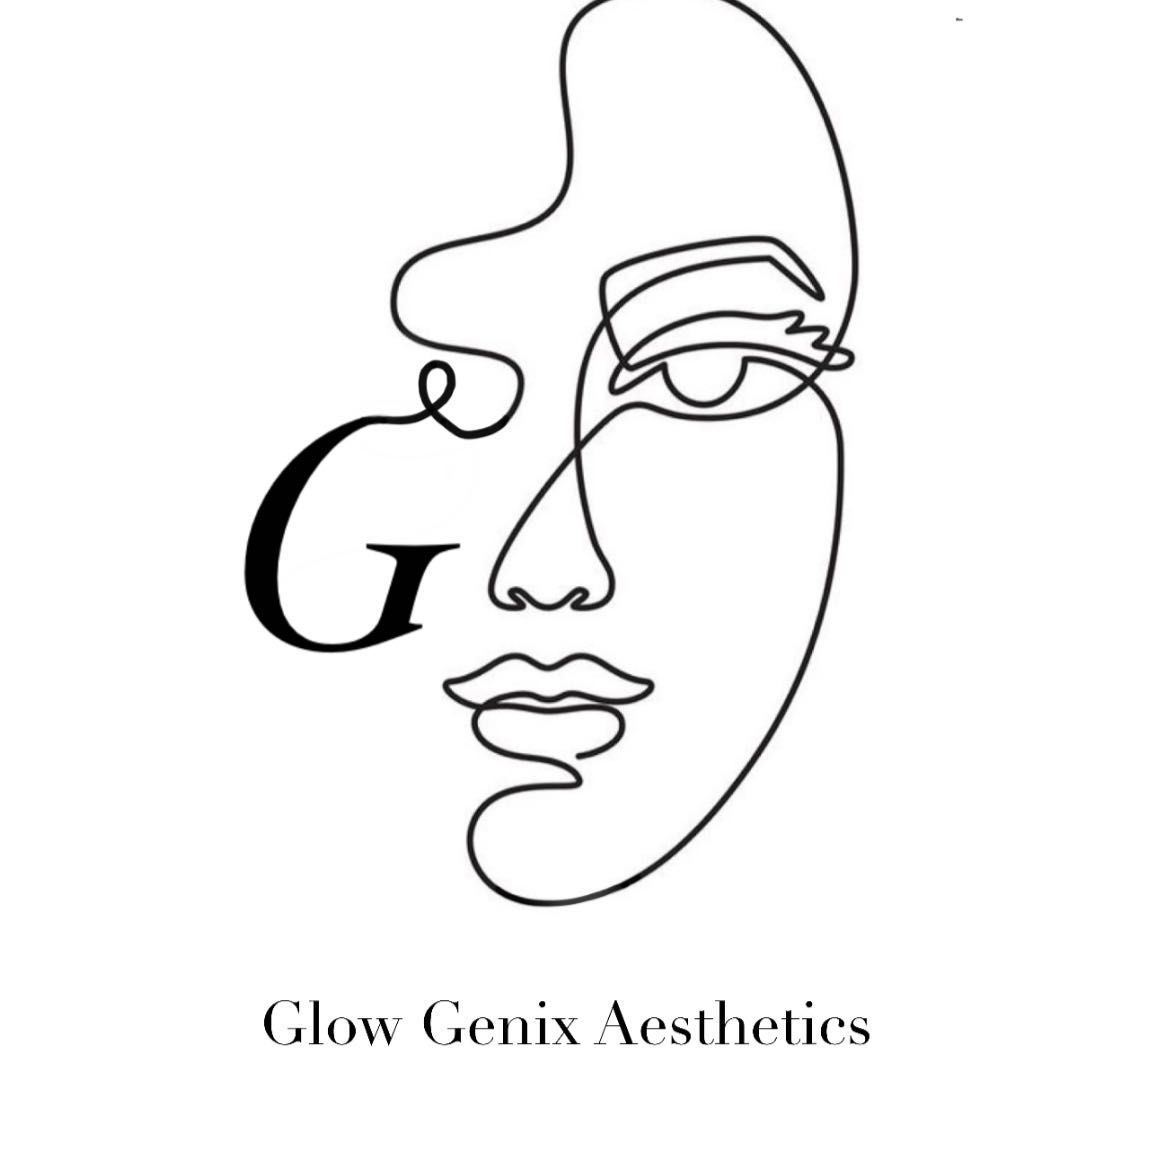 Glow Genix Aesthetics, 15 Orchard Street, BB6 7EE, Blackburn